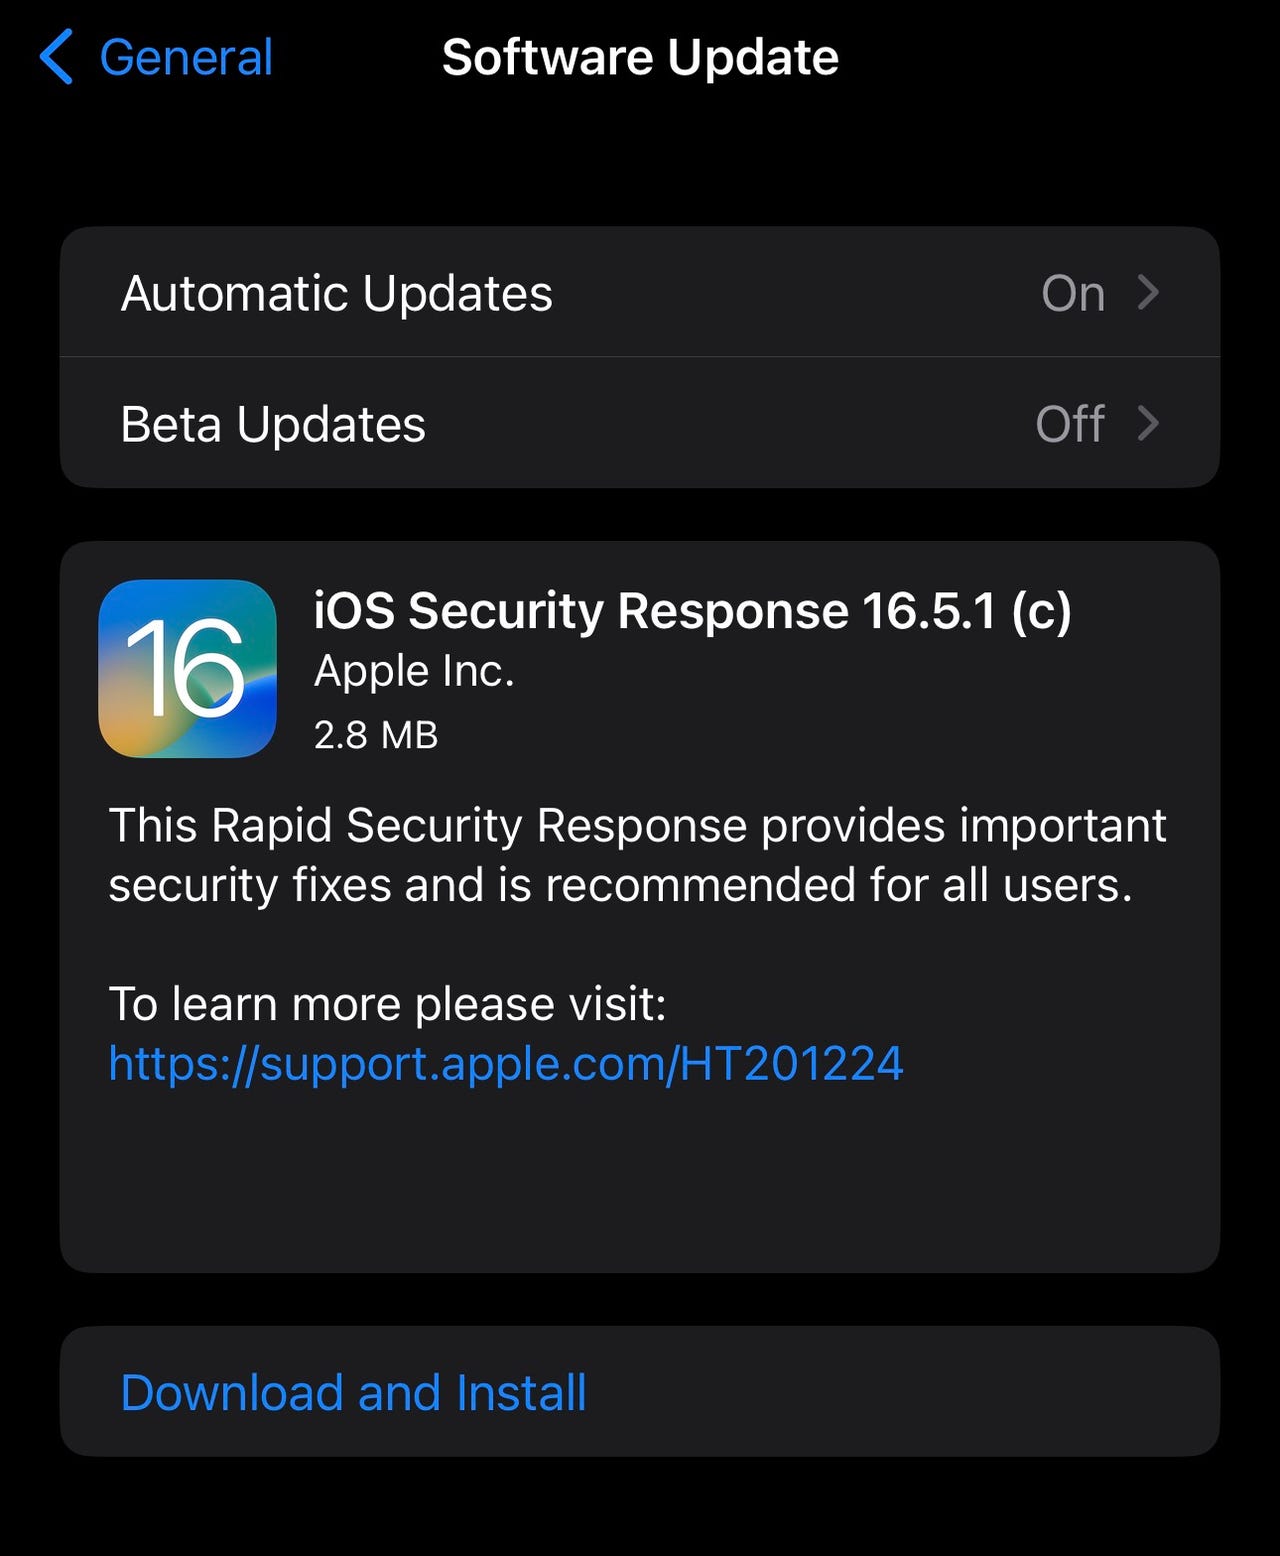 iOS 16.5.1 (c) update